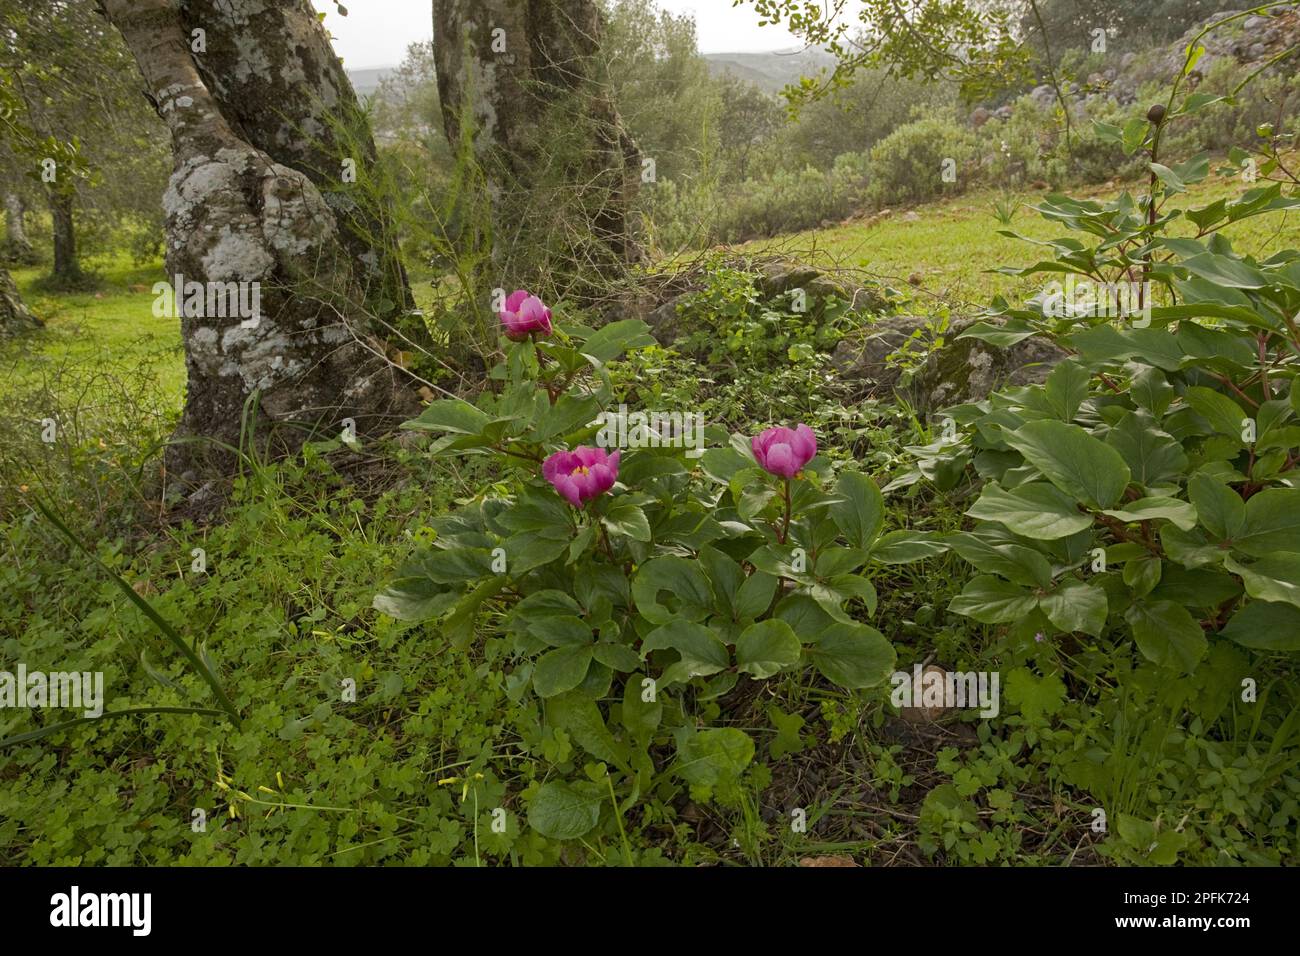 Flowering Western Peony (Paeonia broteroi), growing in carob grove habitat, Algarve, Portugal Stock Photo